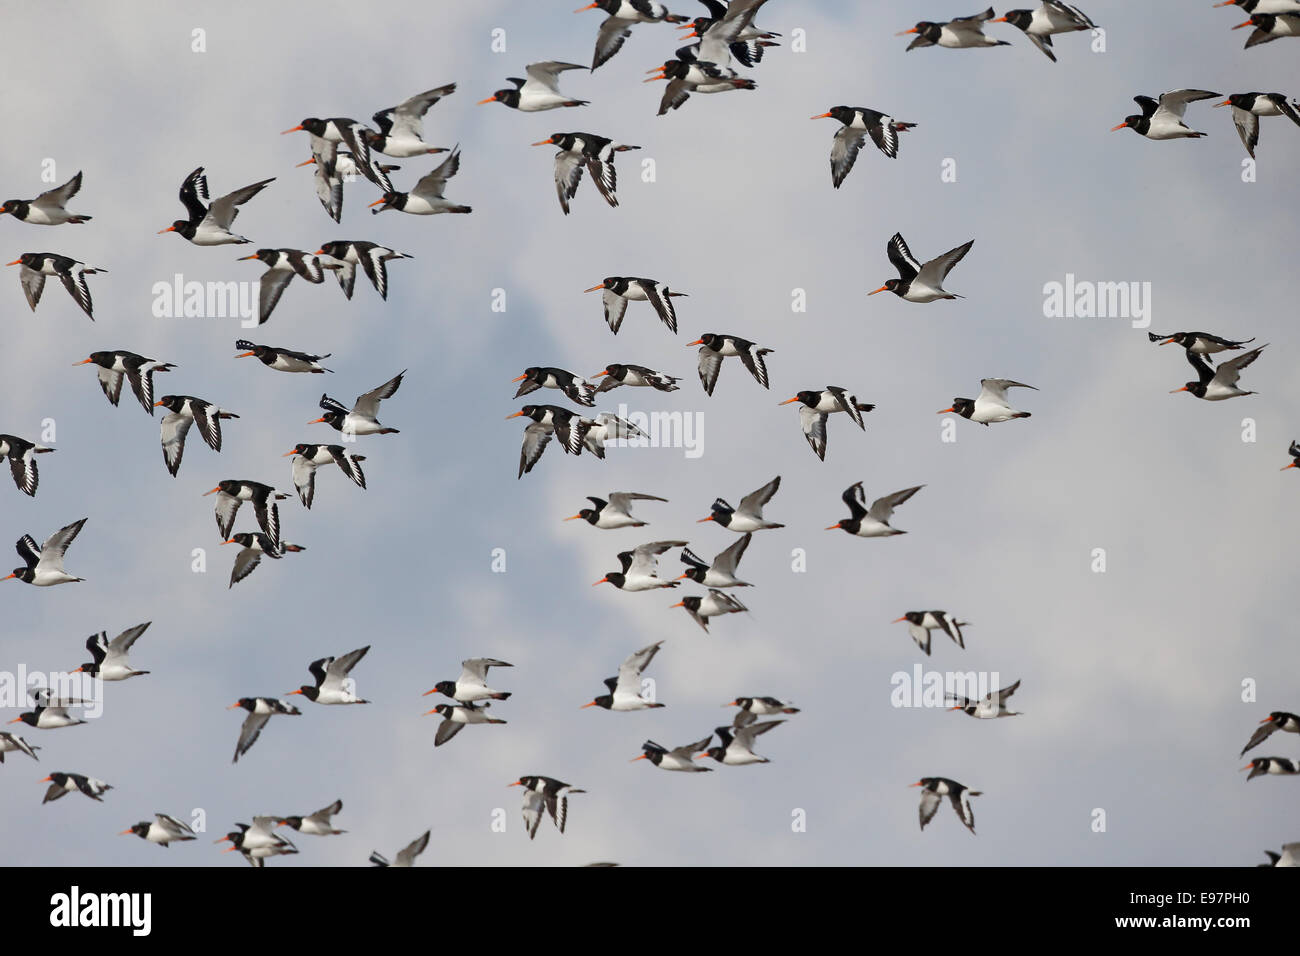 Oystercatcher, Haematopus ostralegus,  flock of bird in flight, Lancashire, October 2014 Stock Photo